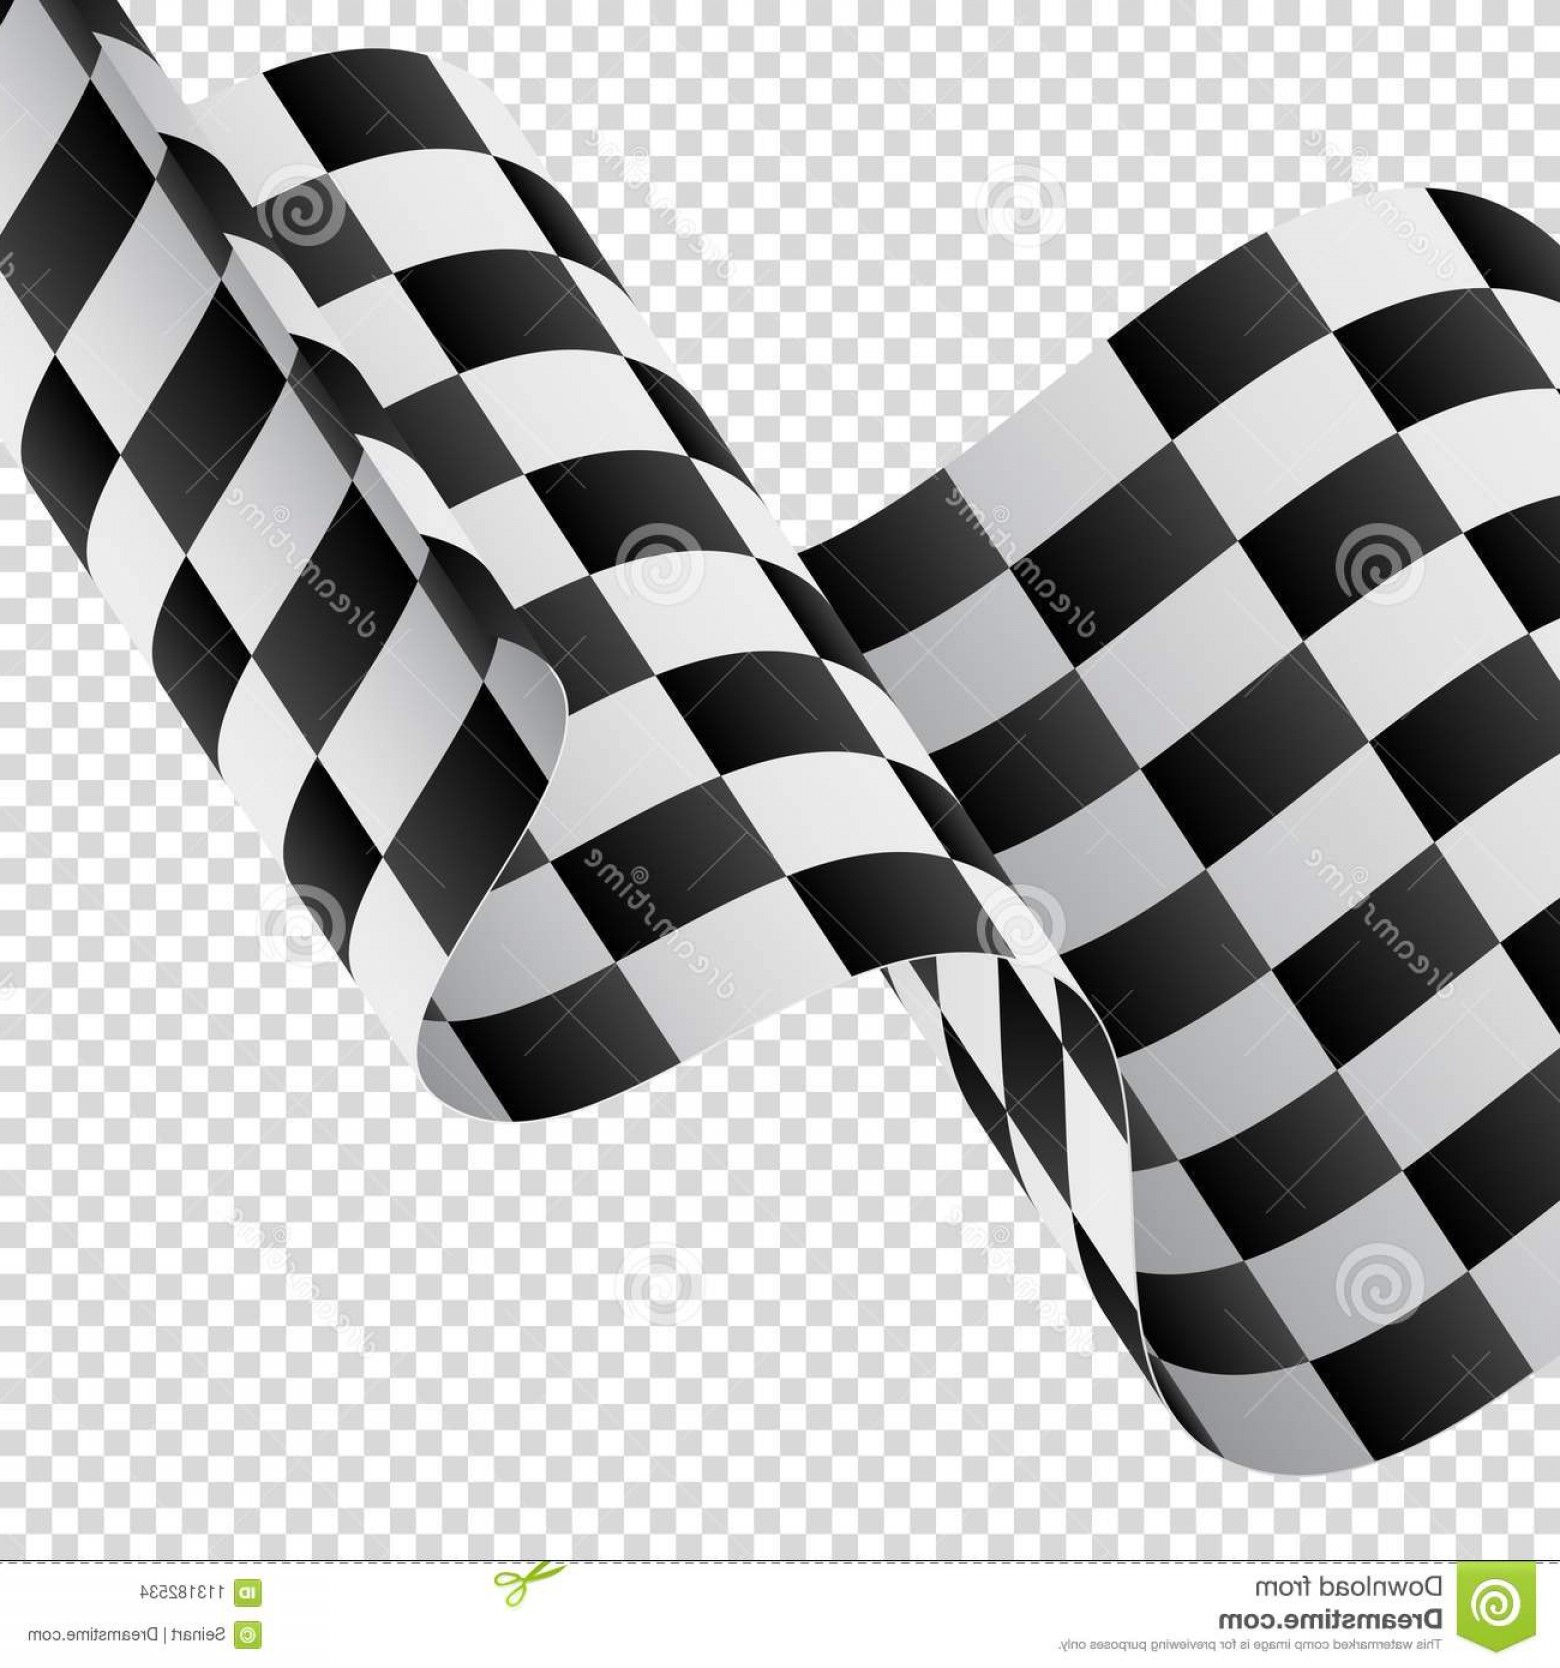 Download Waving Checkered Flag Vector at Vectorified.com ...